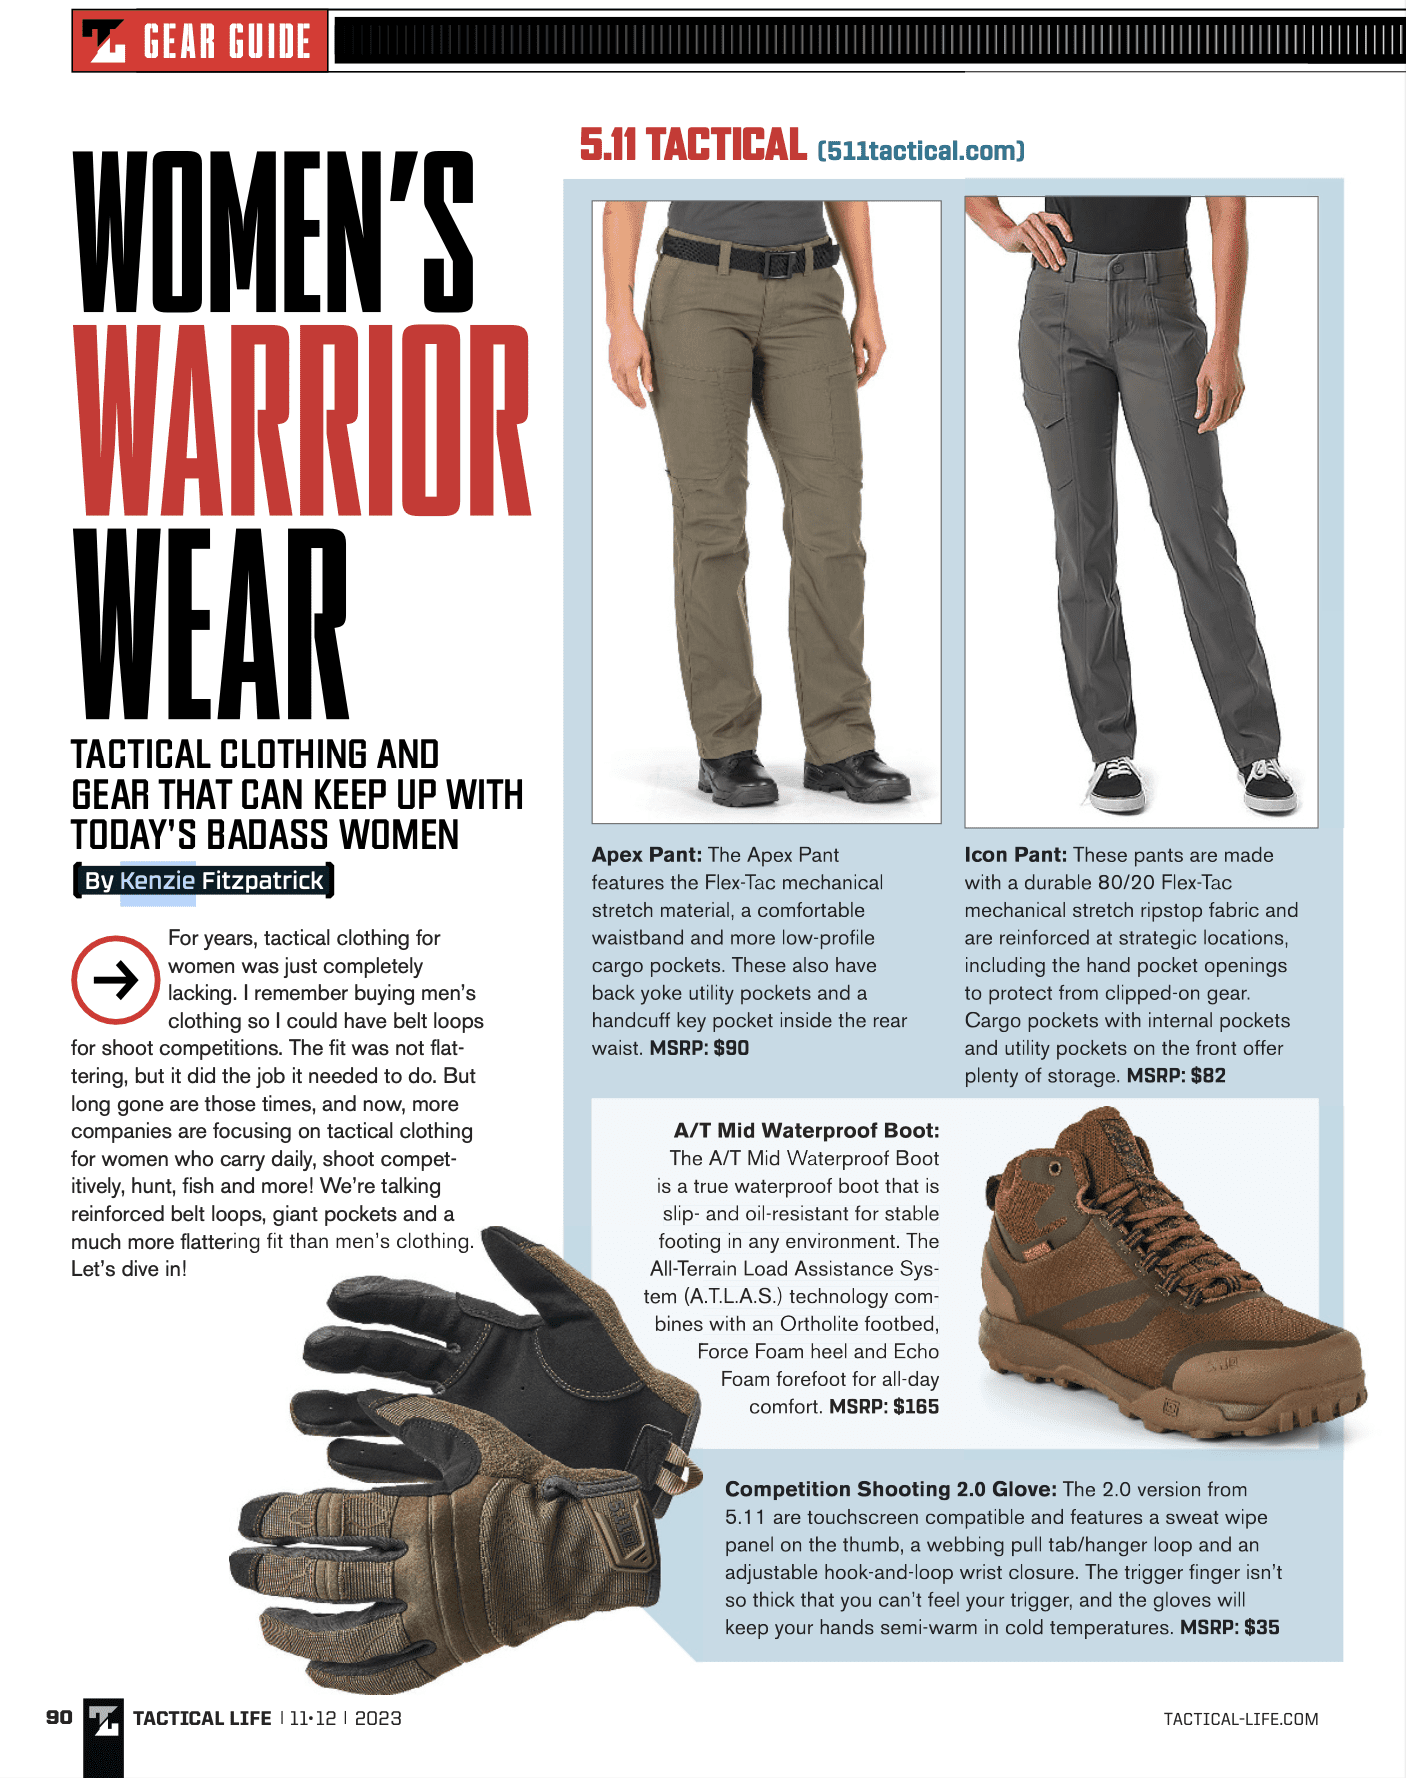 Women’s Warrior Wear